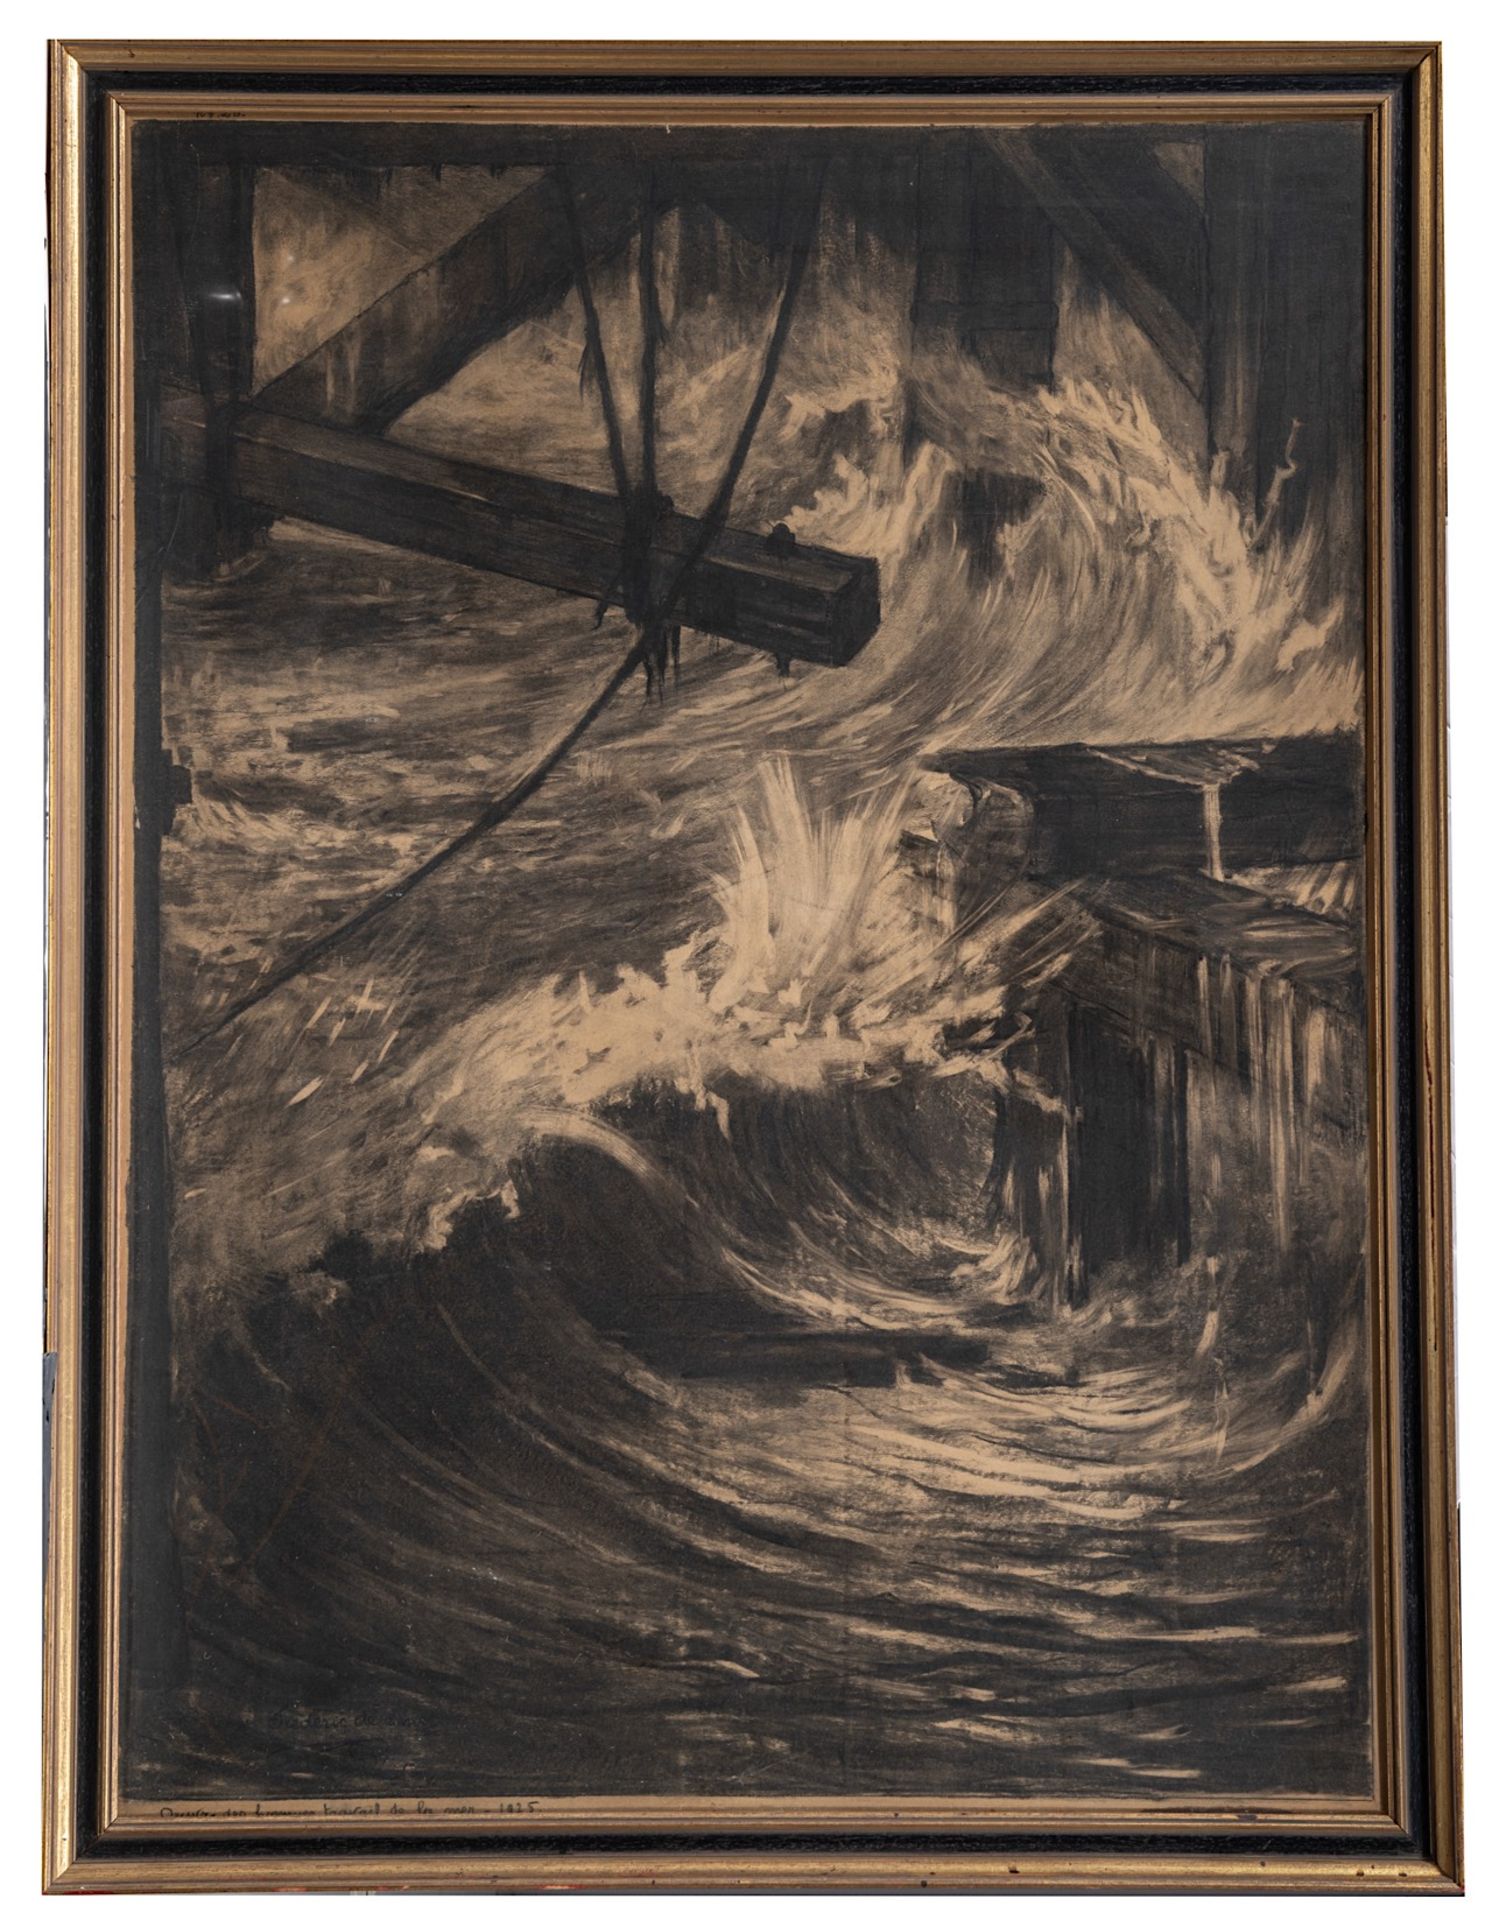 Frederic De Smet (1876-1948), Oeuvre des hommes, travail de la mer', 1925, charcoal drawing on paper - Bild 2 aus 6